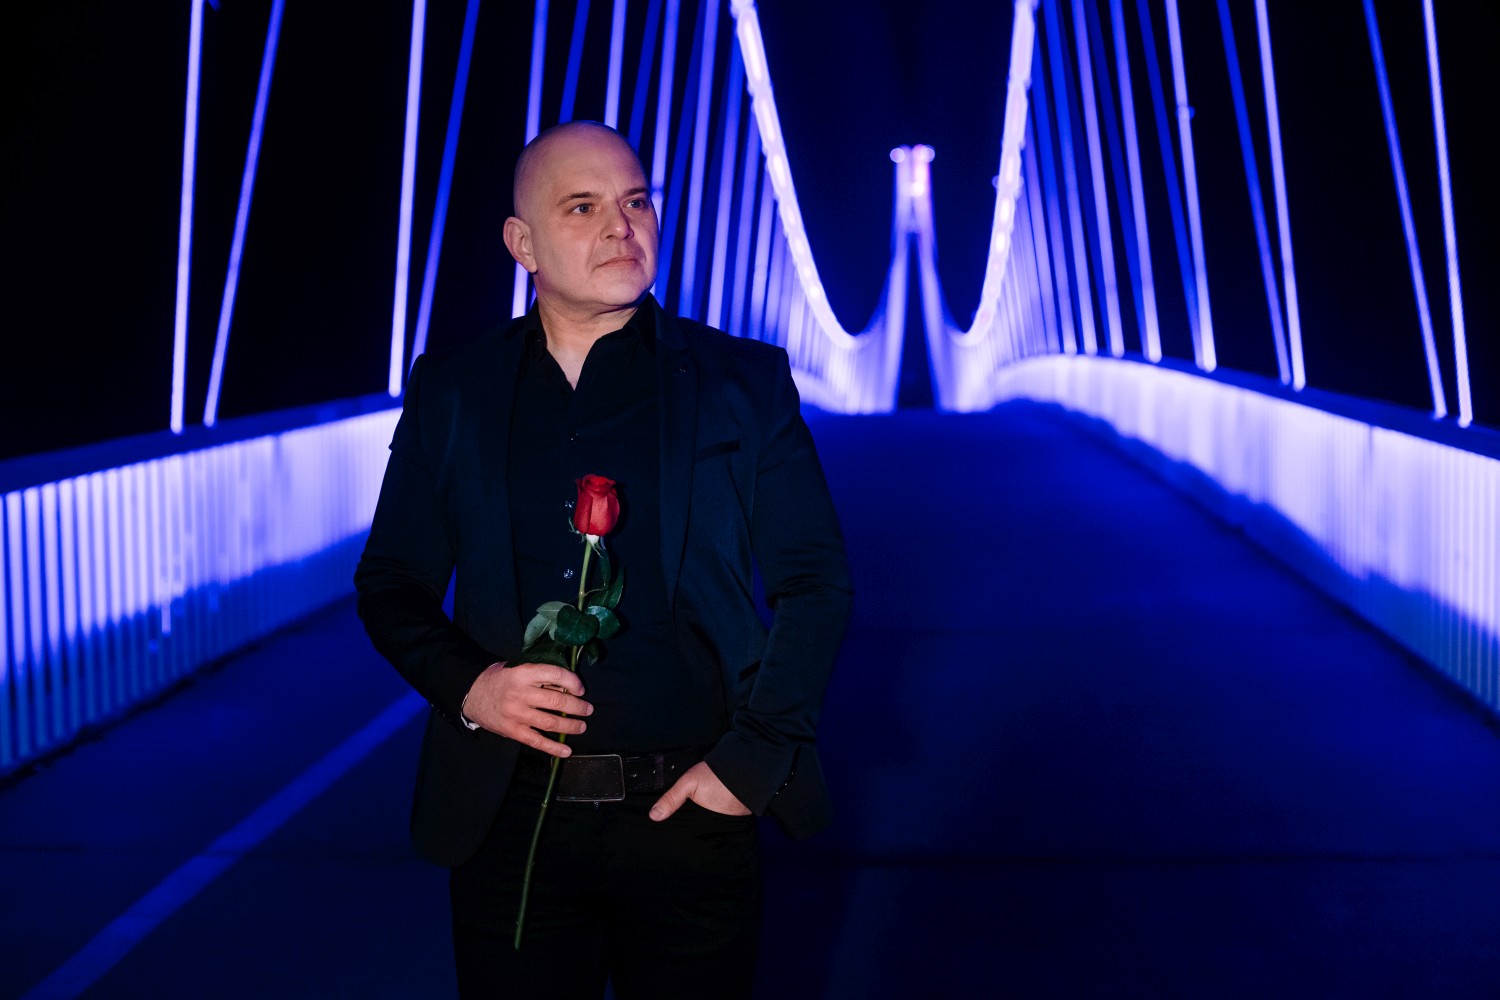 Novim singlom “Istina u tami” Igor Delač završava svoju “Trilogiju o ljubavi”